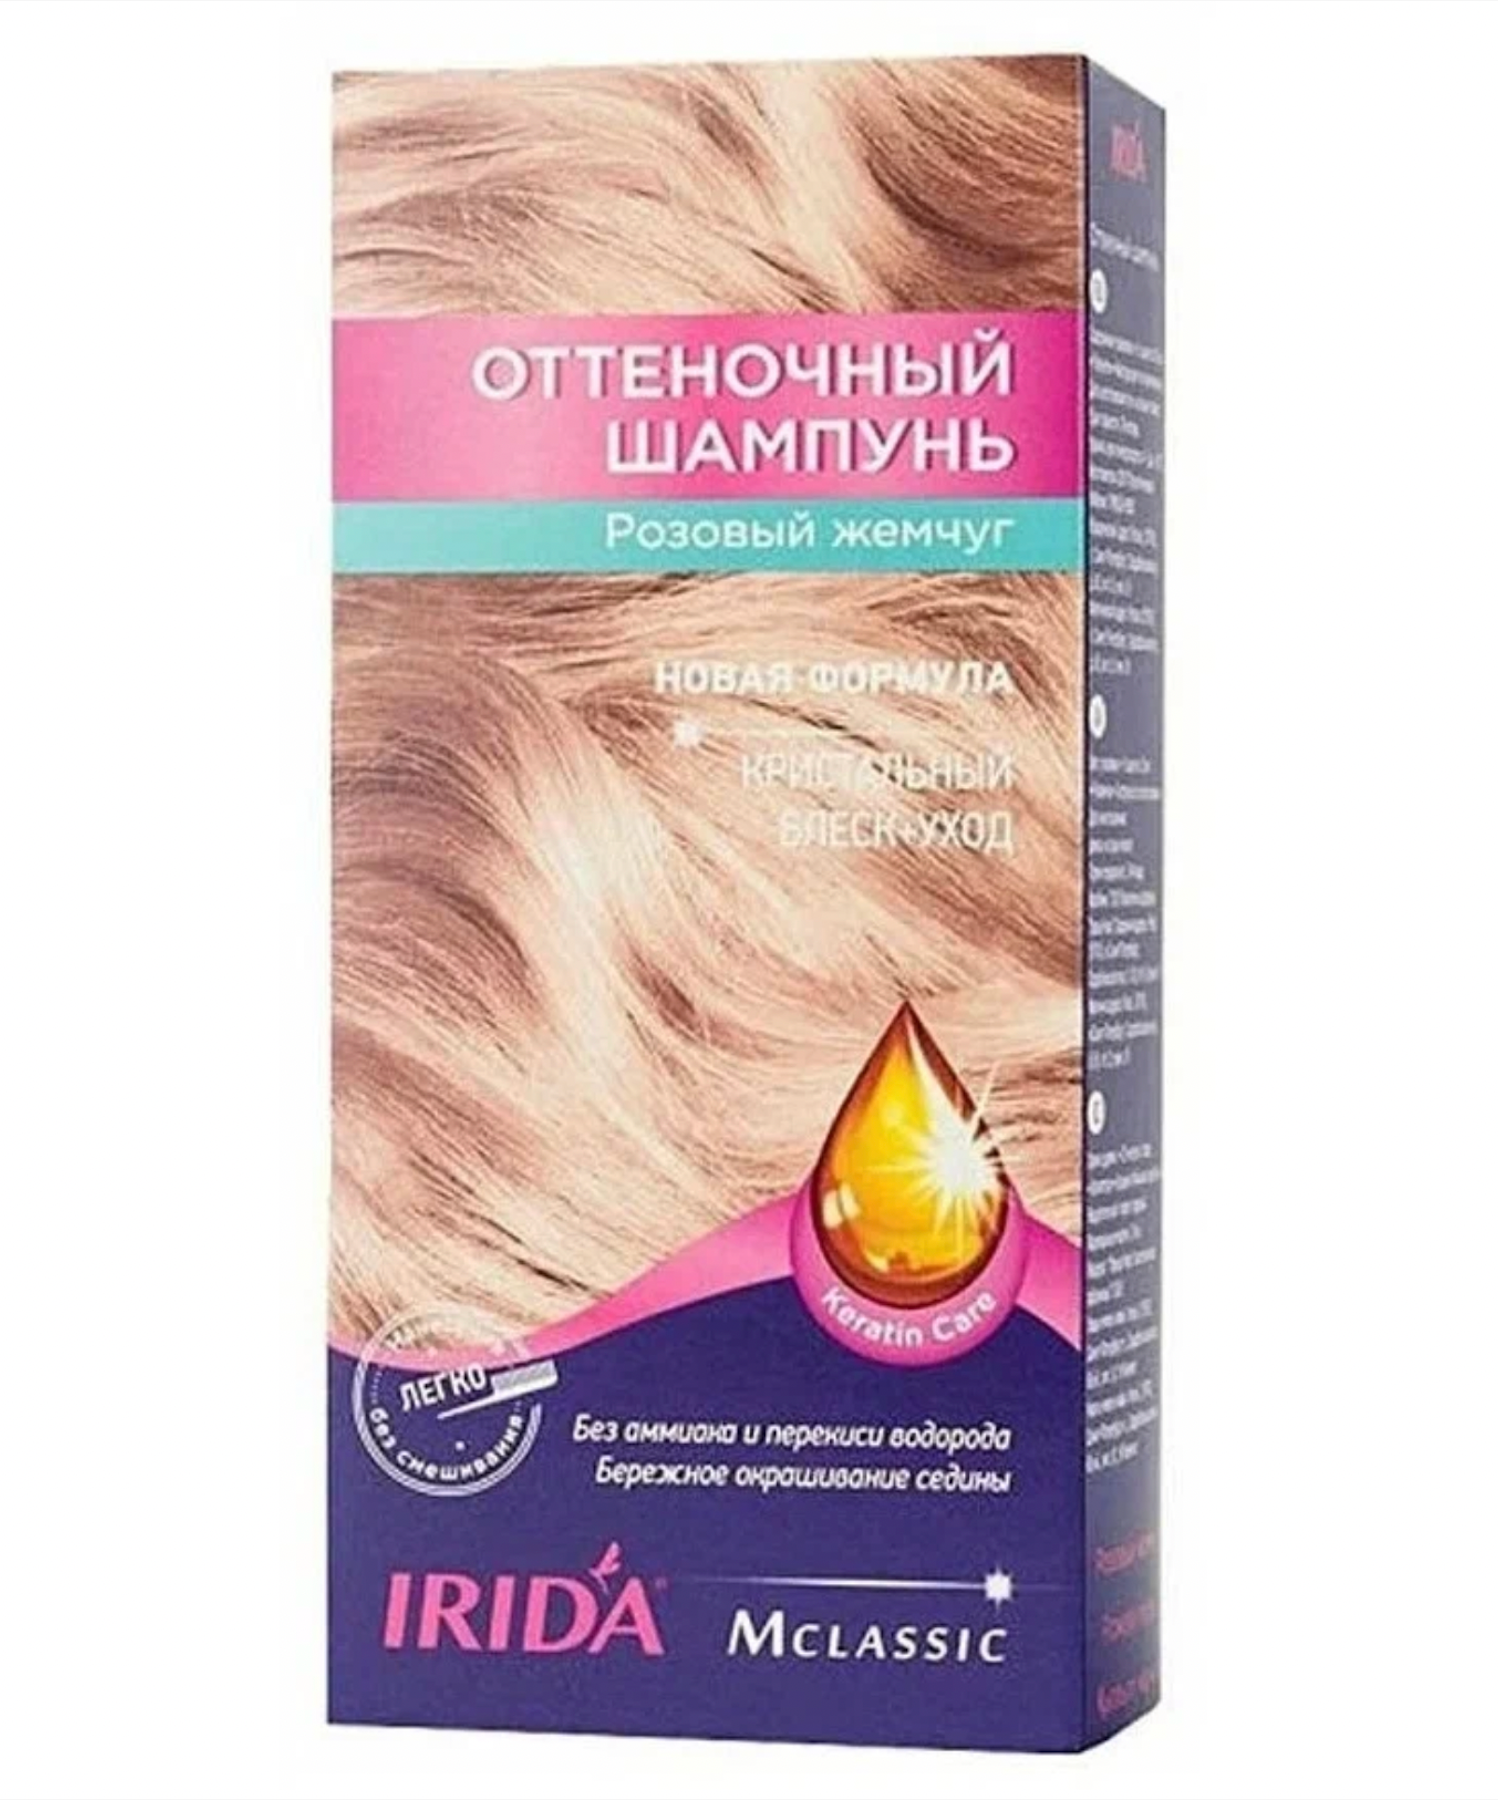 Ирида / Irida М Classic - Оттеночный шампунь для волос блеск-уход тон Розовый жемчуг 75 мл